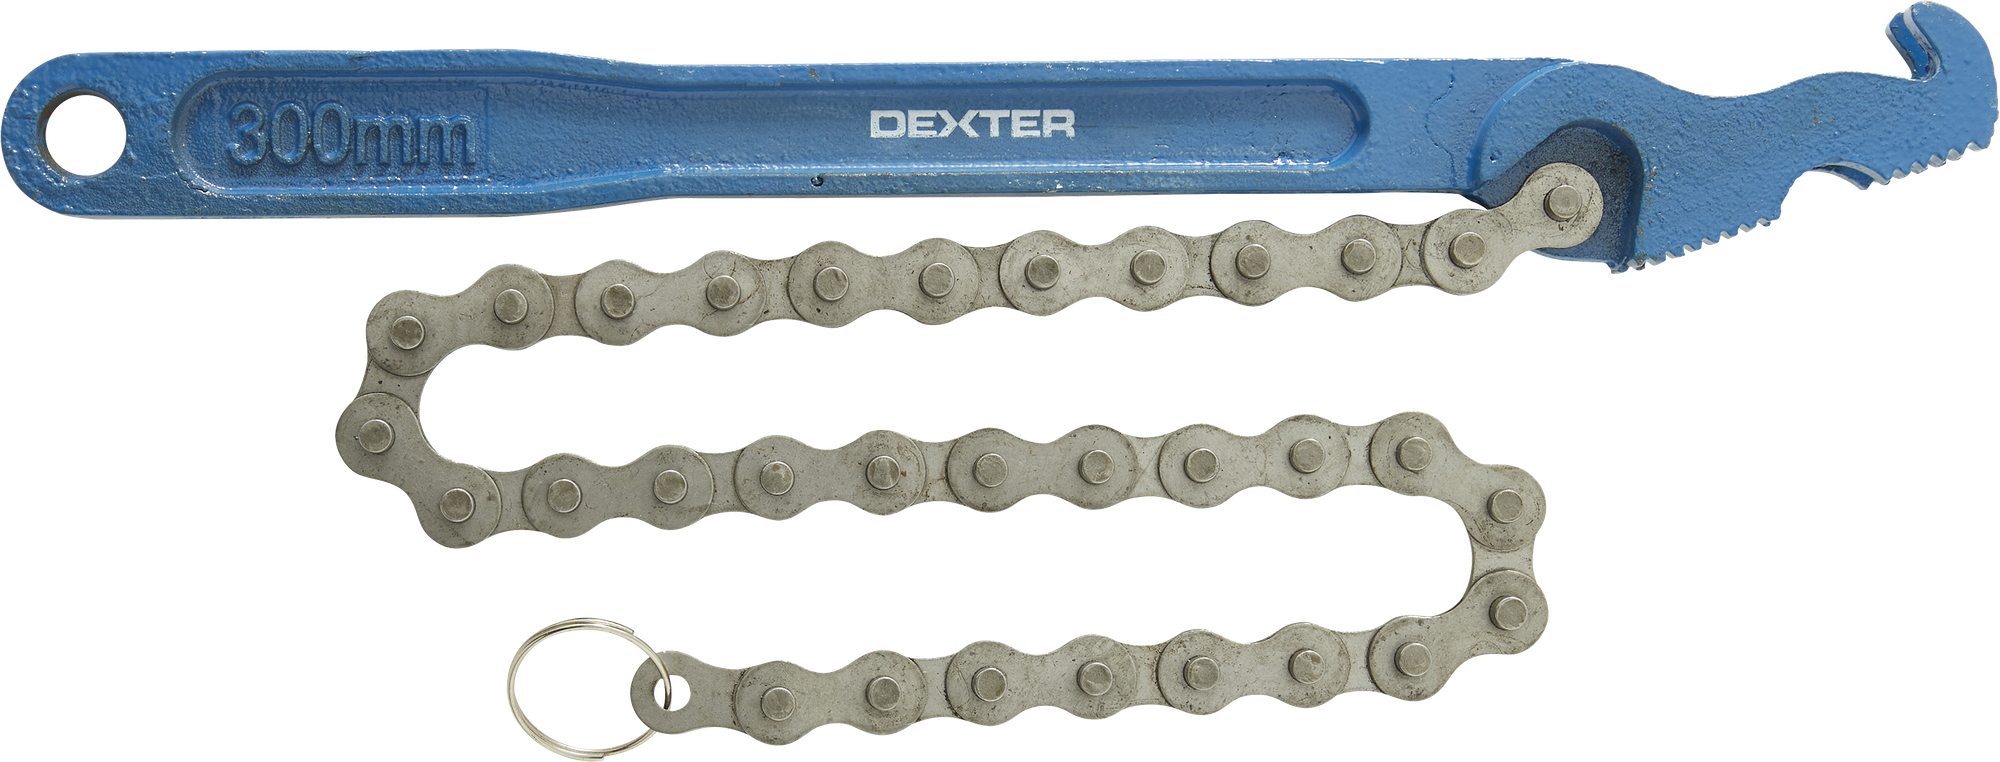 Ключ цепной двусторонний Dexter XMCW05 захват 127 мм, длина 300 мм